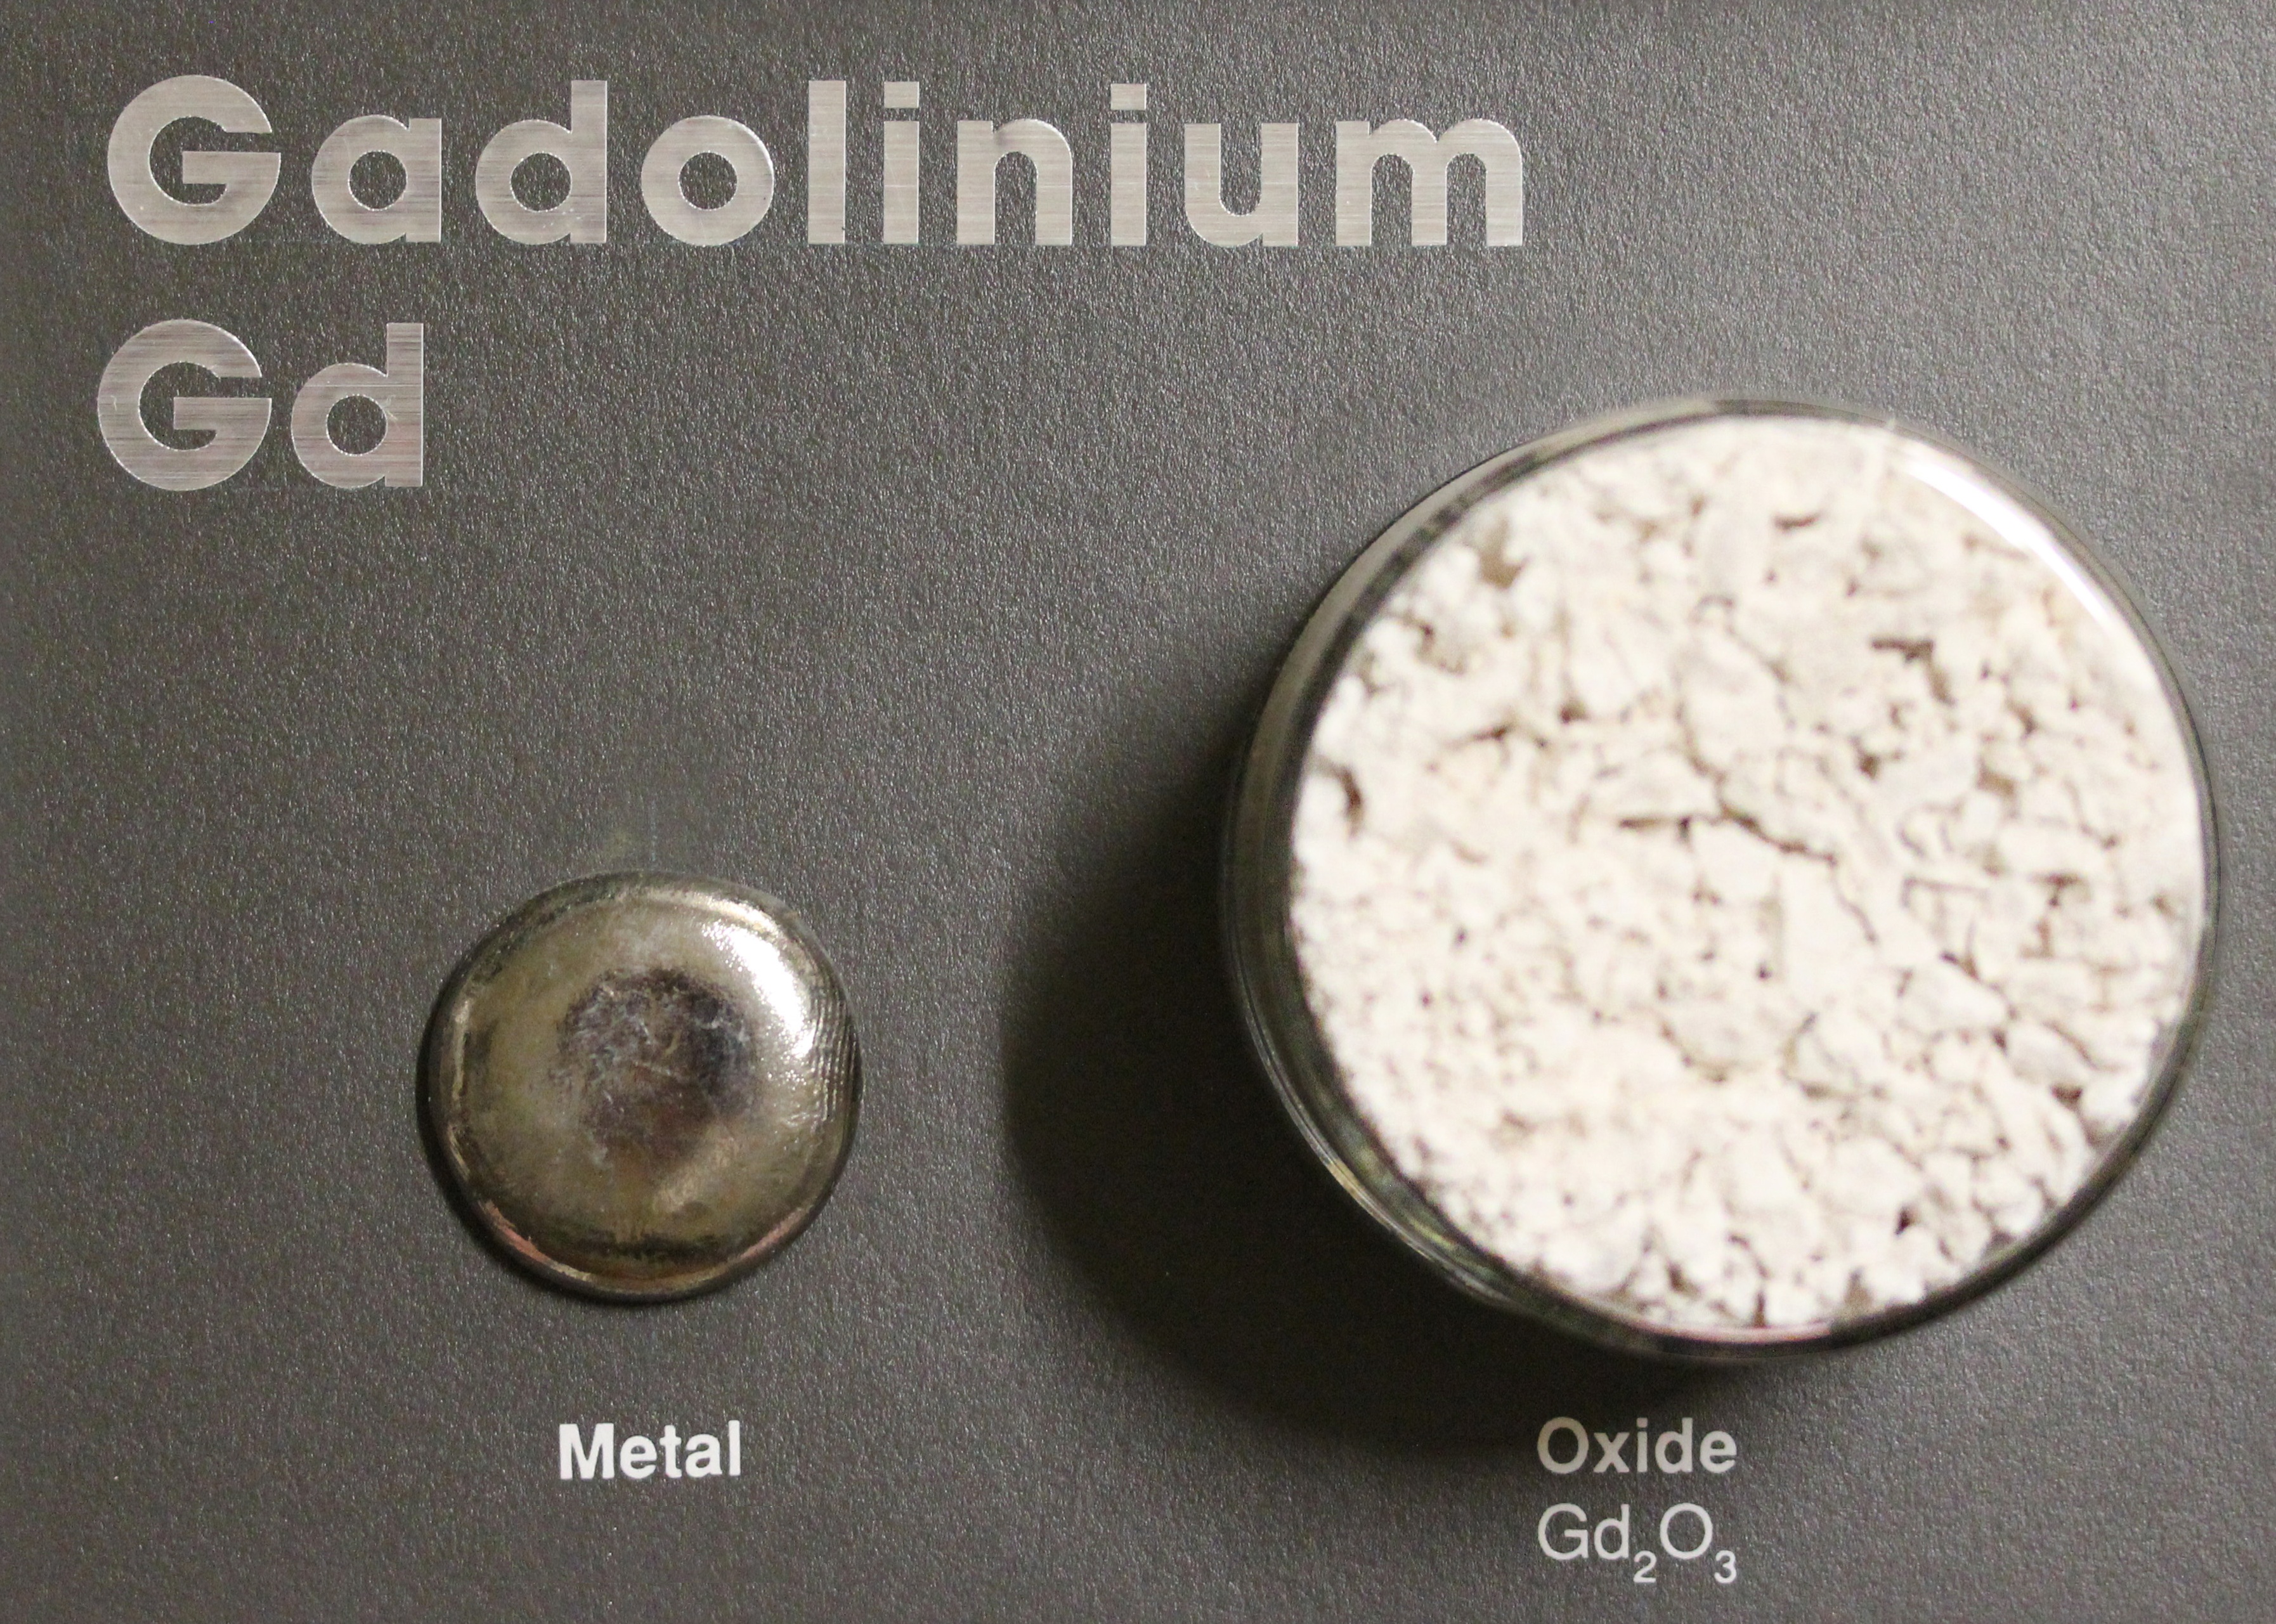 Gadolinium metal and oxide